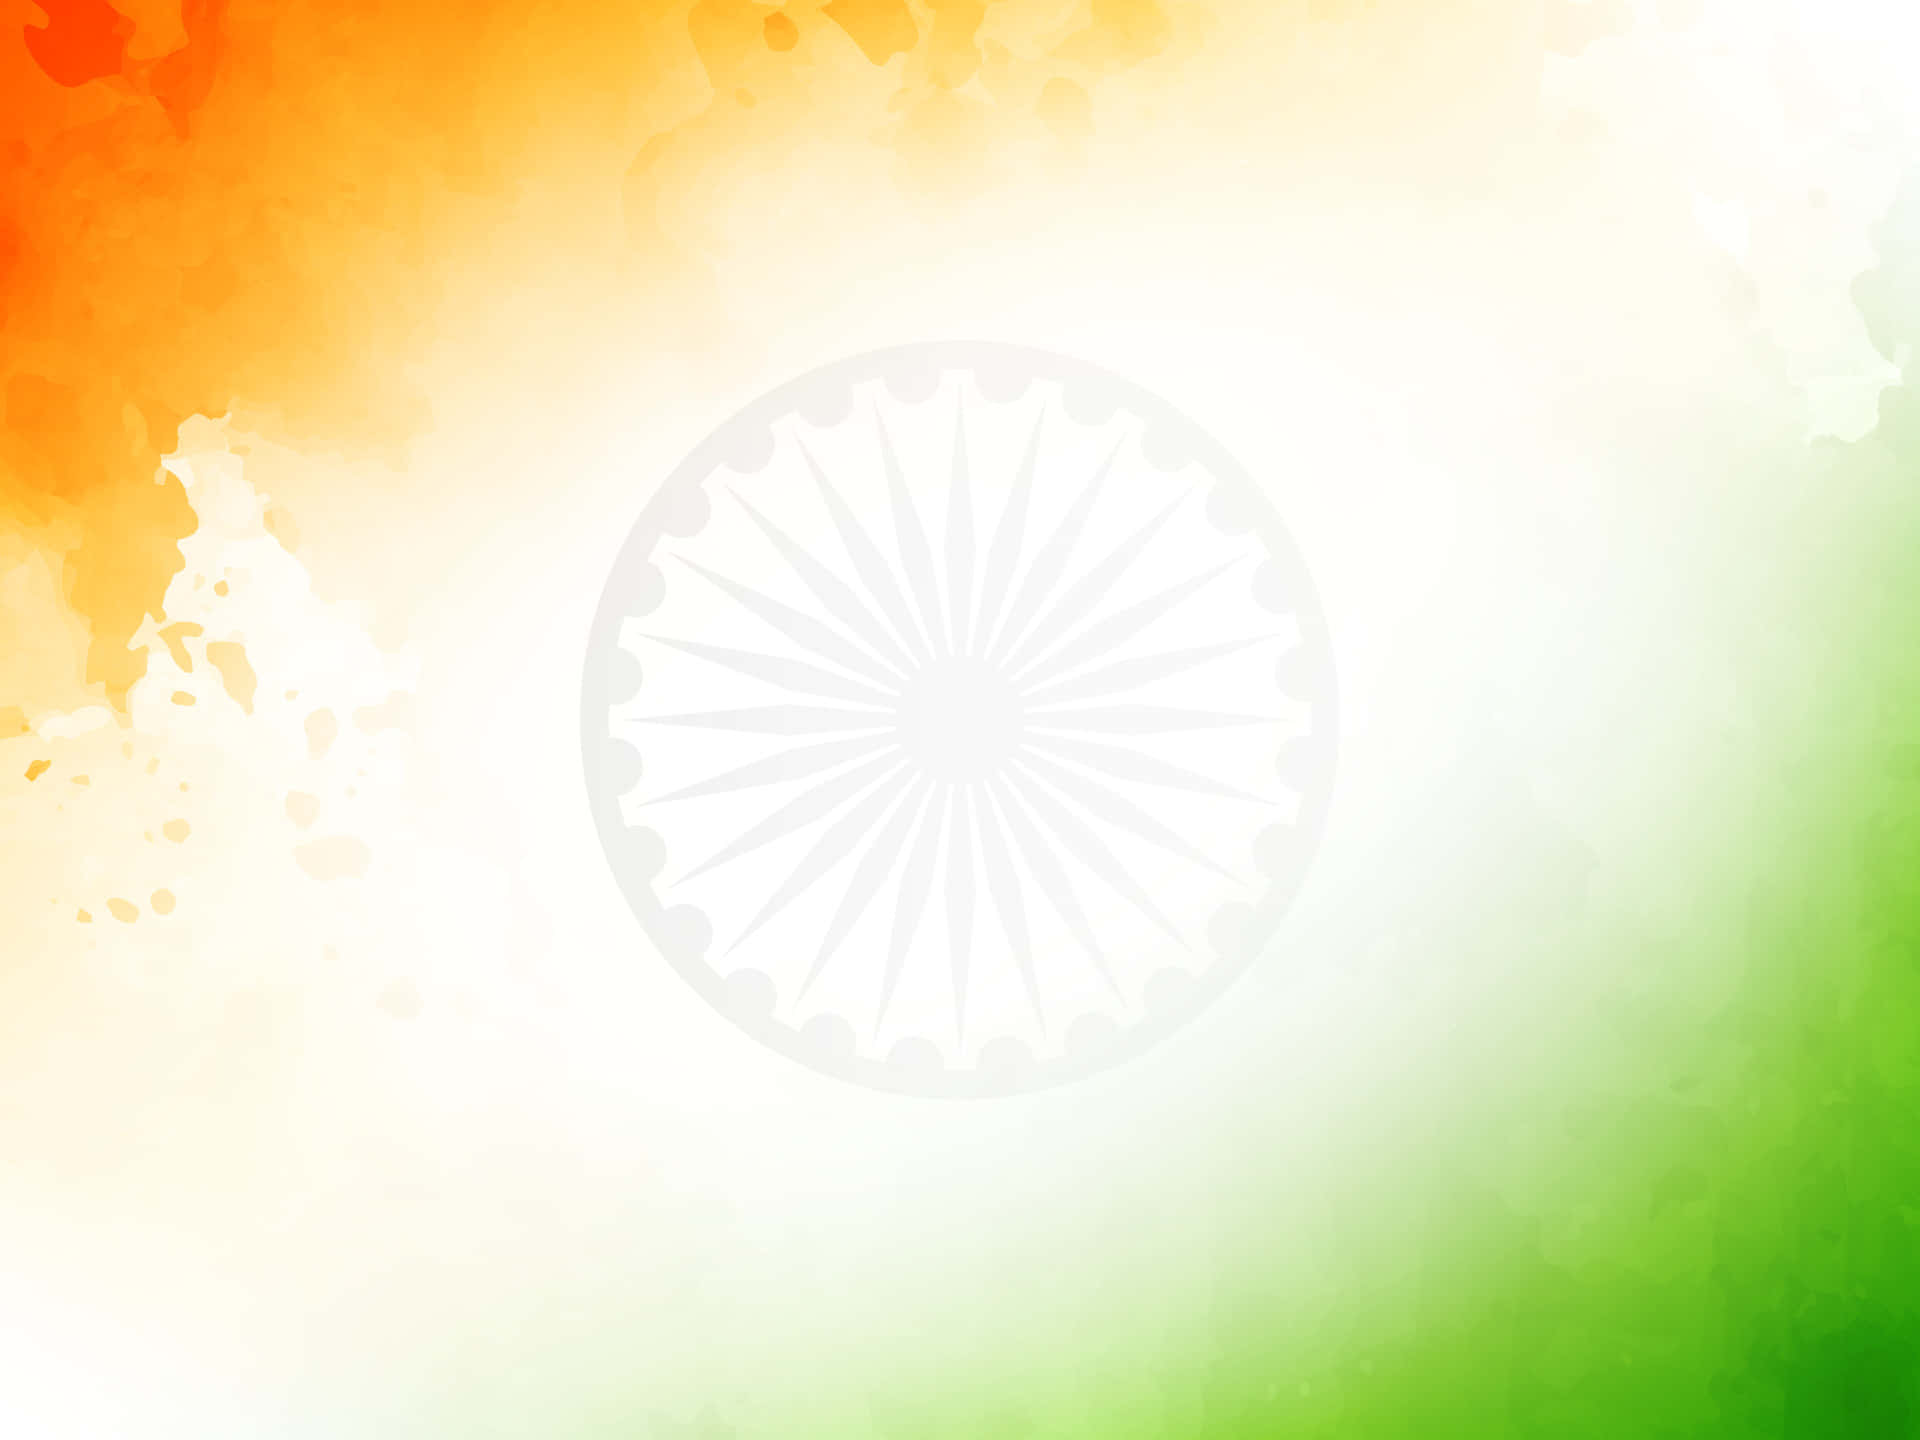 Celebrating the Unity of India on Republic Day